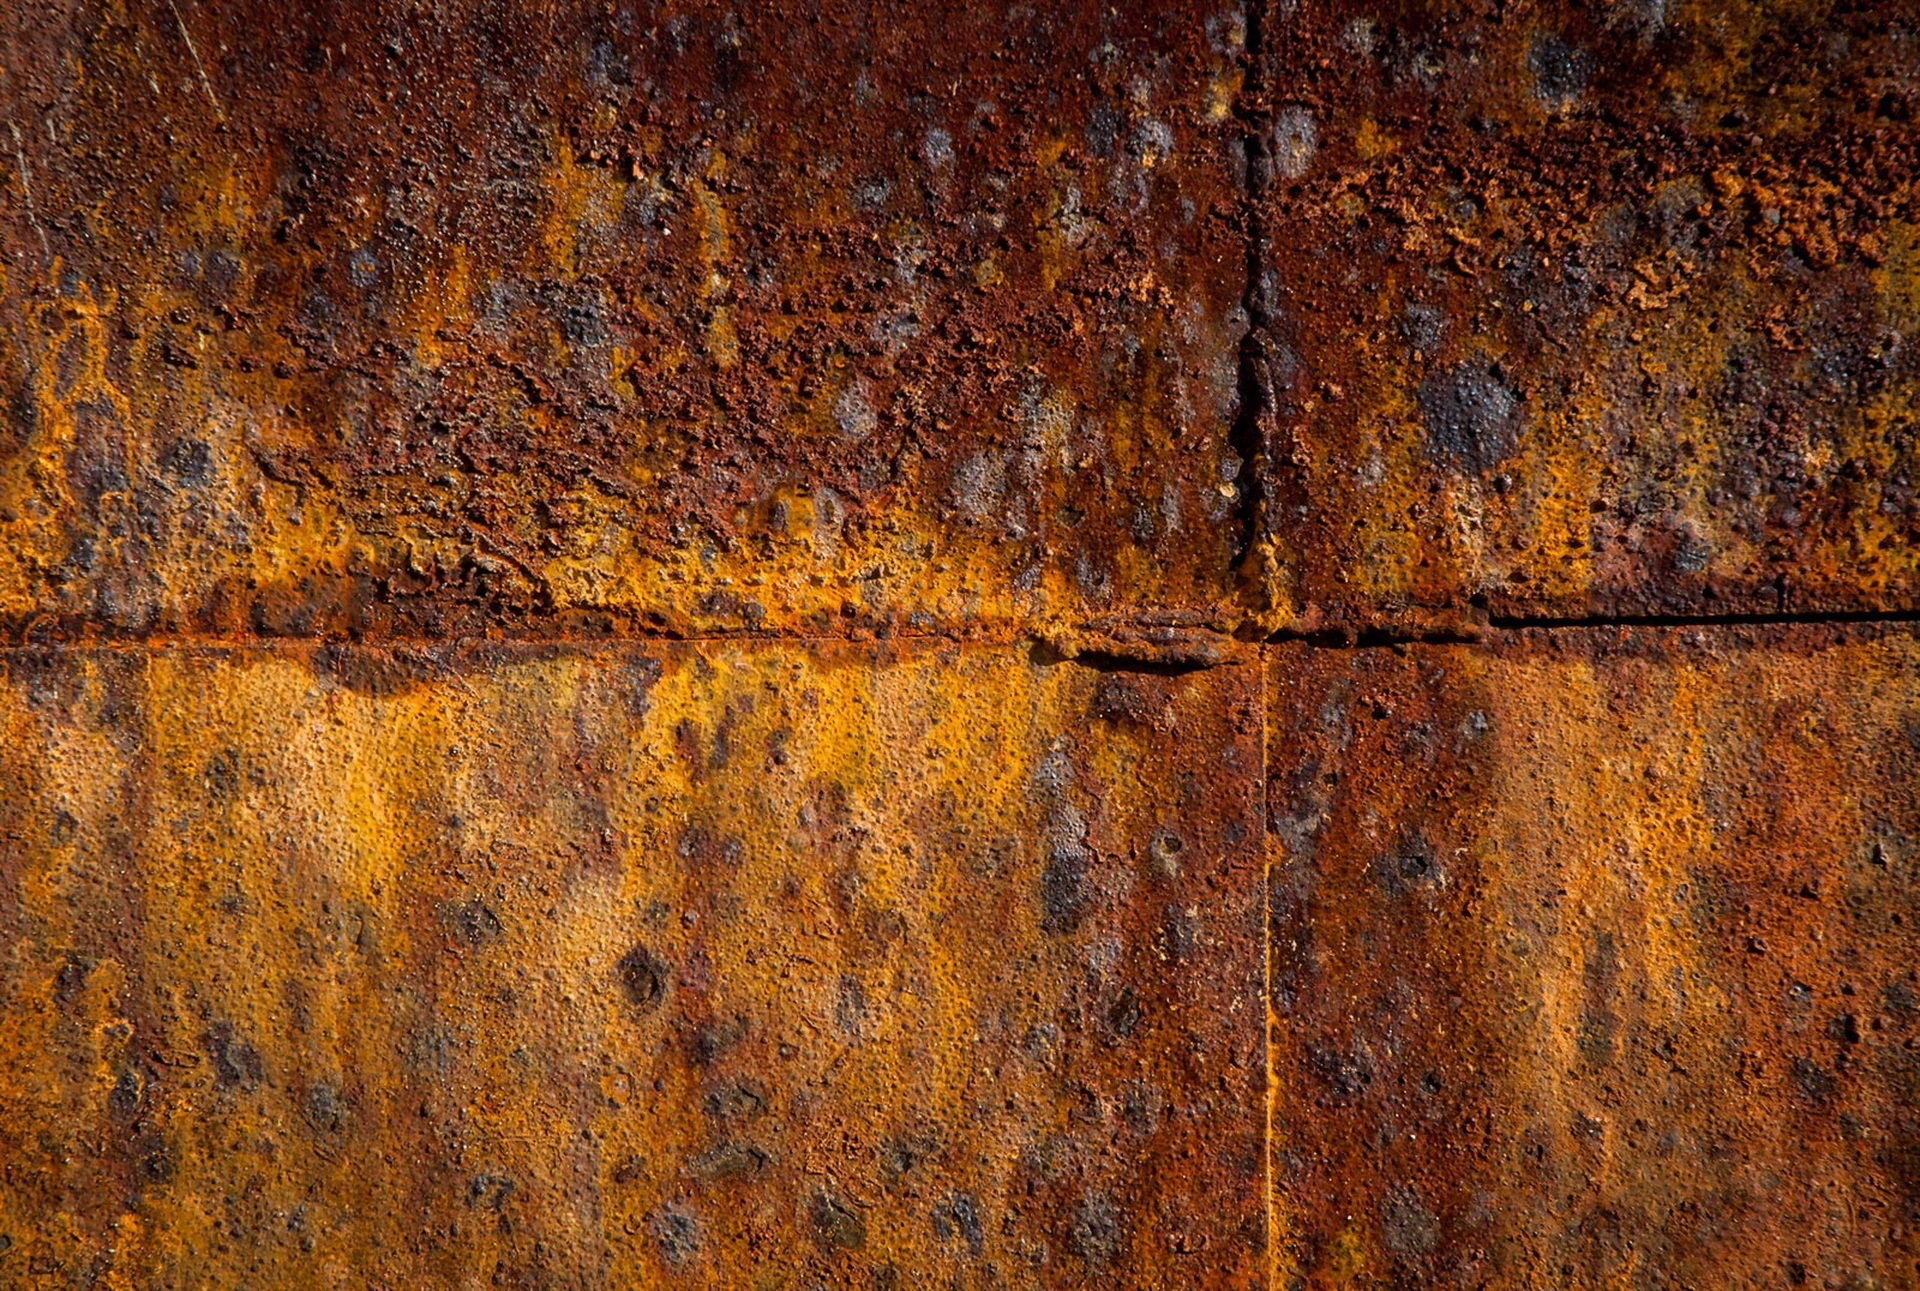 Terrain textures rust фото 68